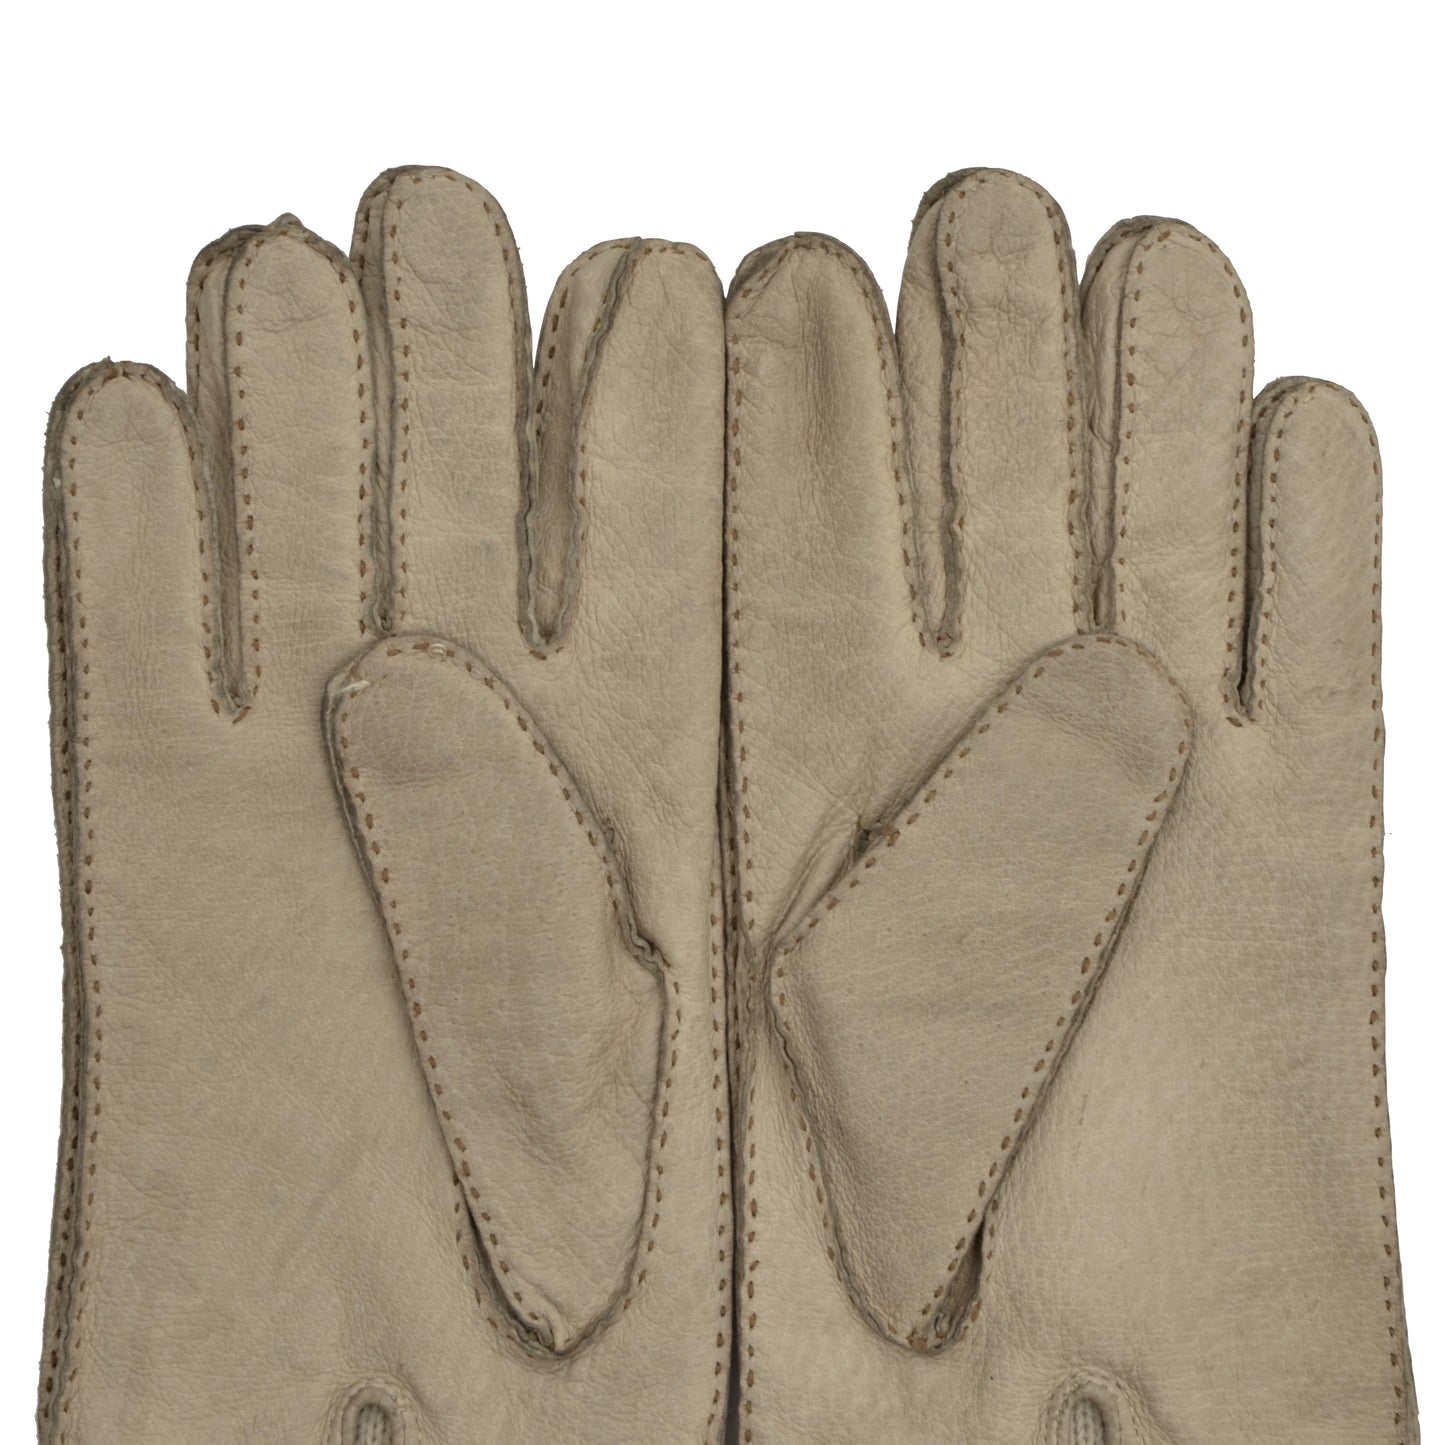 Pigskin Leather Gloves - Cream